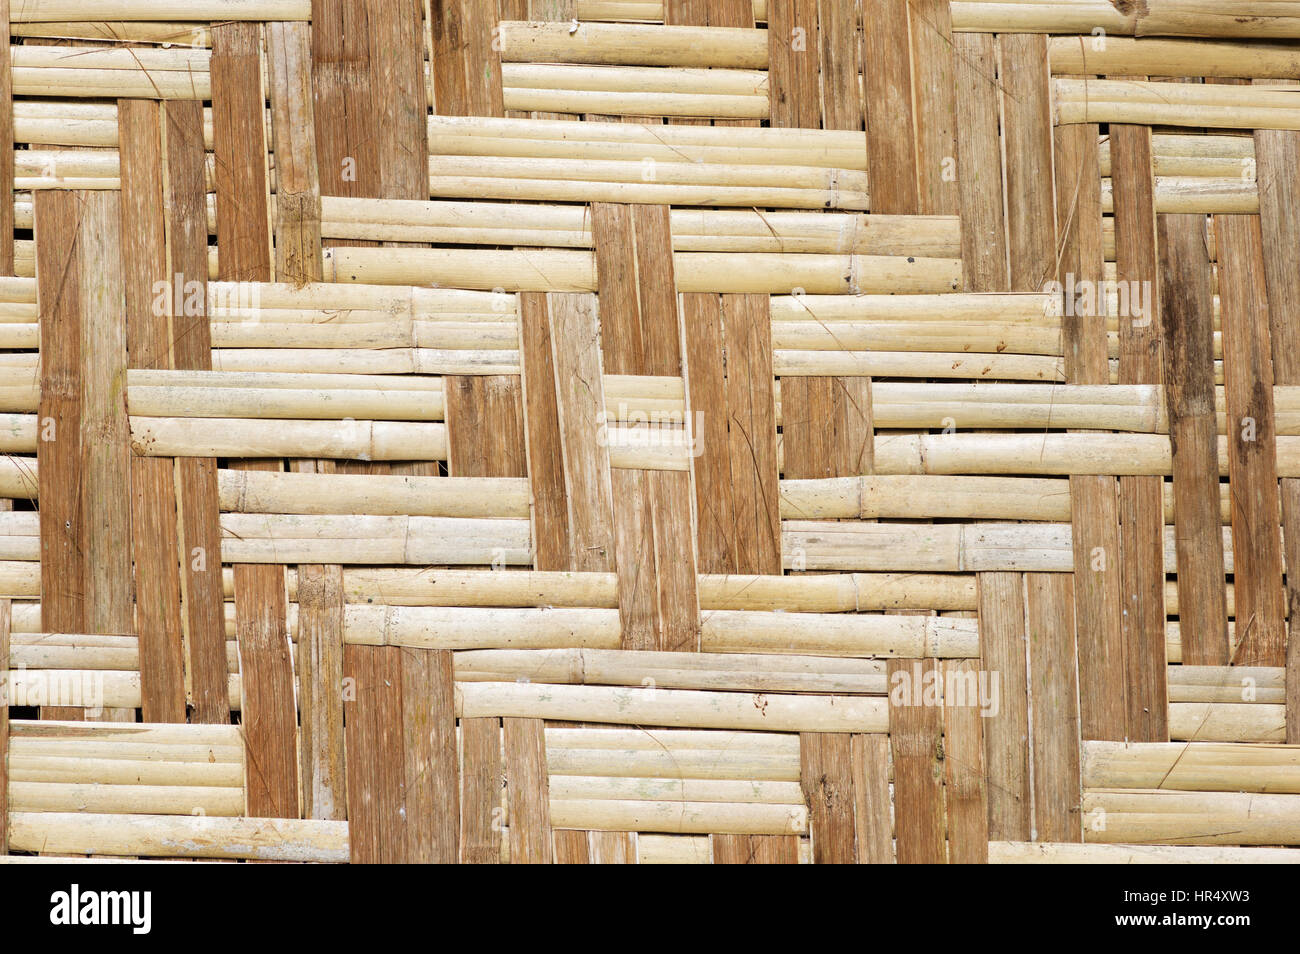 7-Palilleria-listones-de-bambu - STOA Bambú